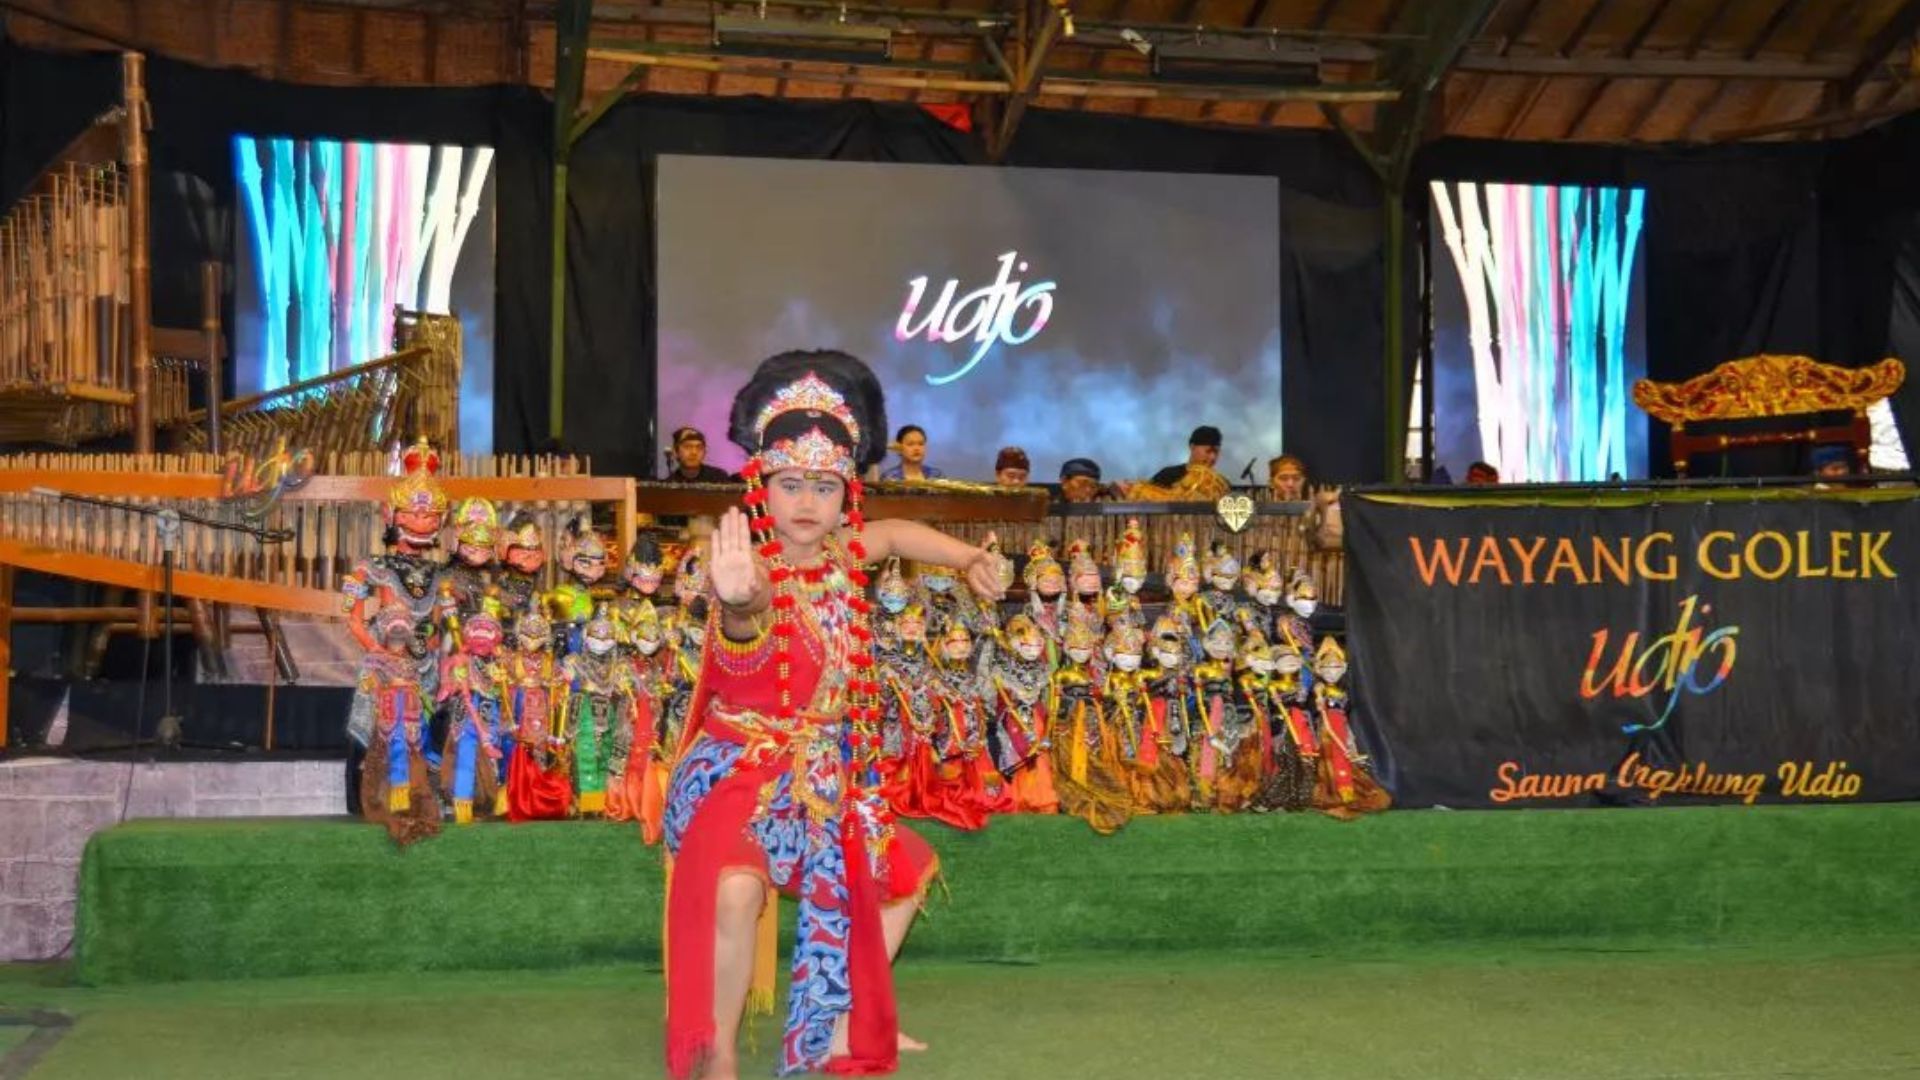 Destinasi wisata kesenian yang sedang menampilkan tarian Wayang Golek di Saung Angklung Udjo, Bandung. /instagram/@ichannazar10